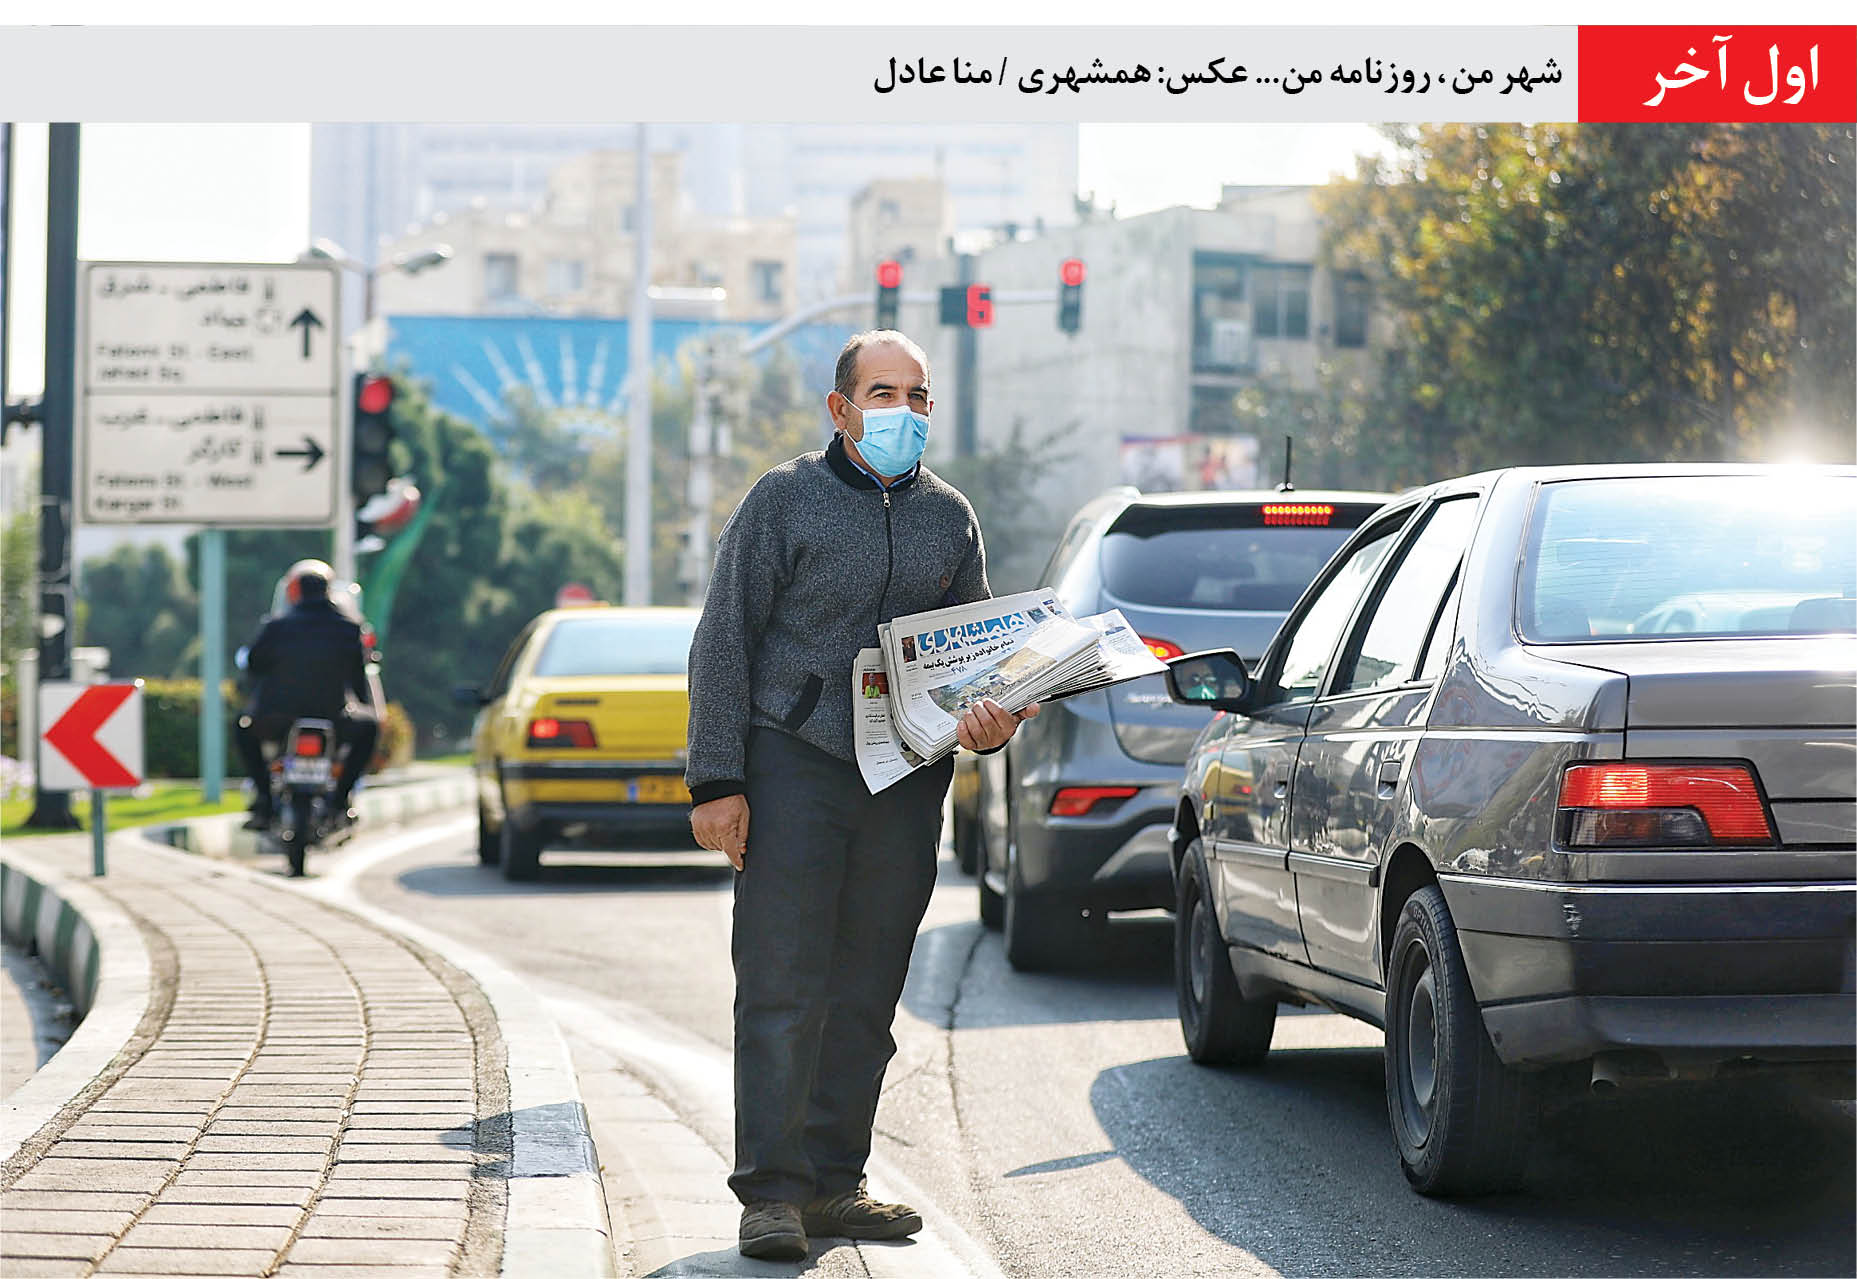 اول آخر/شهر من ، روزنامه من... عکس: همشهری / منا عادل